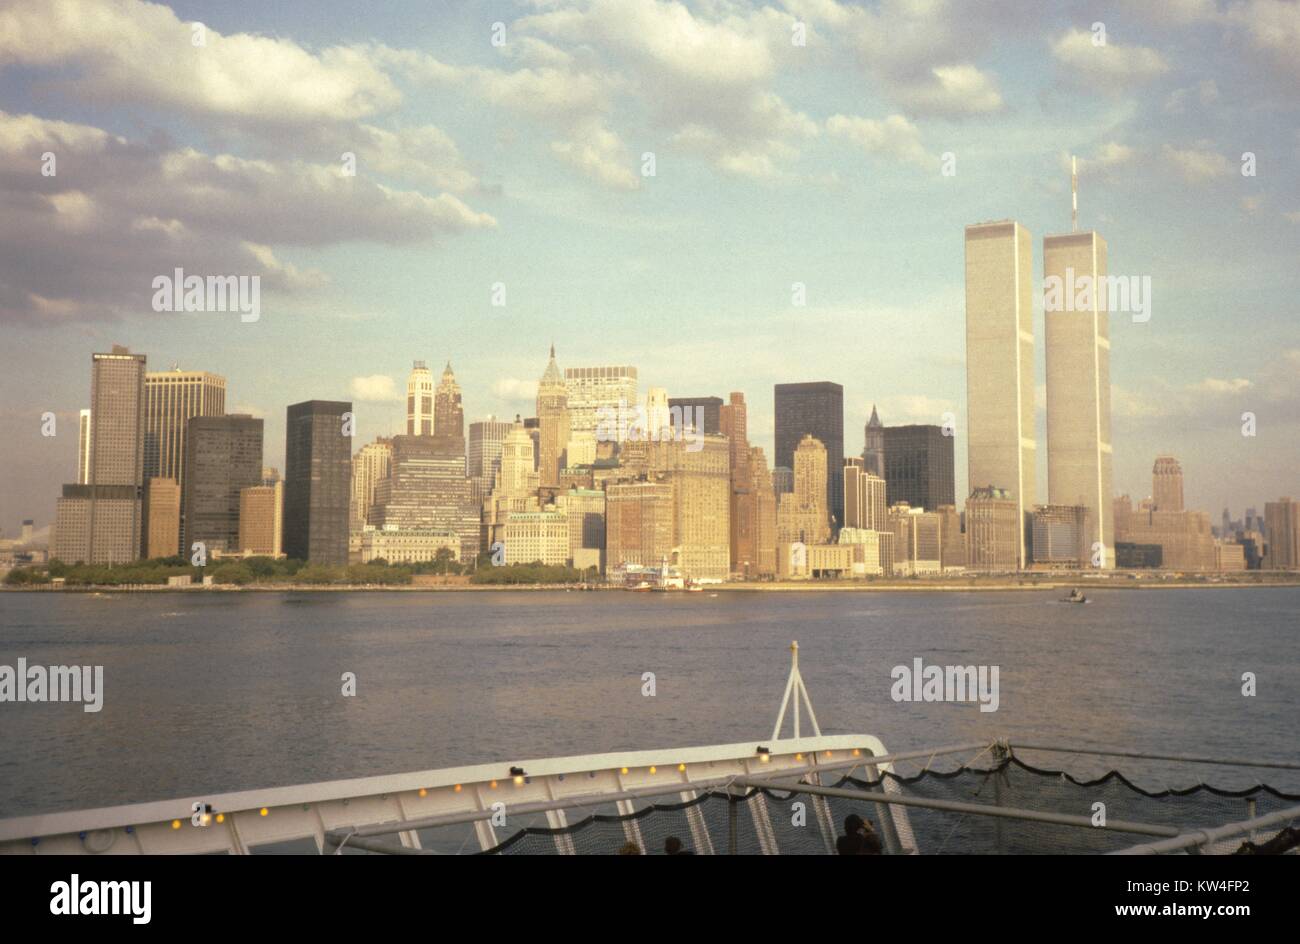 Die Twin Towers des World Trade Center, gesehen vom Deck der Queen Elizabeth 2 Kreuzfahrtschiff der Cunard Line in den Hafen von New York, New York City, New York, 1975. Stockfoto